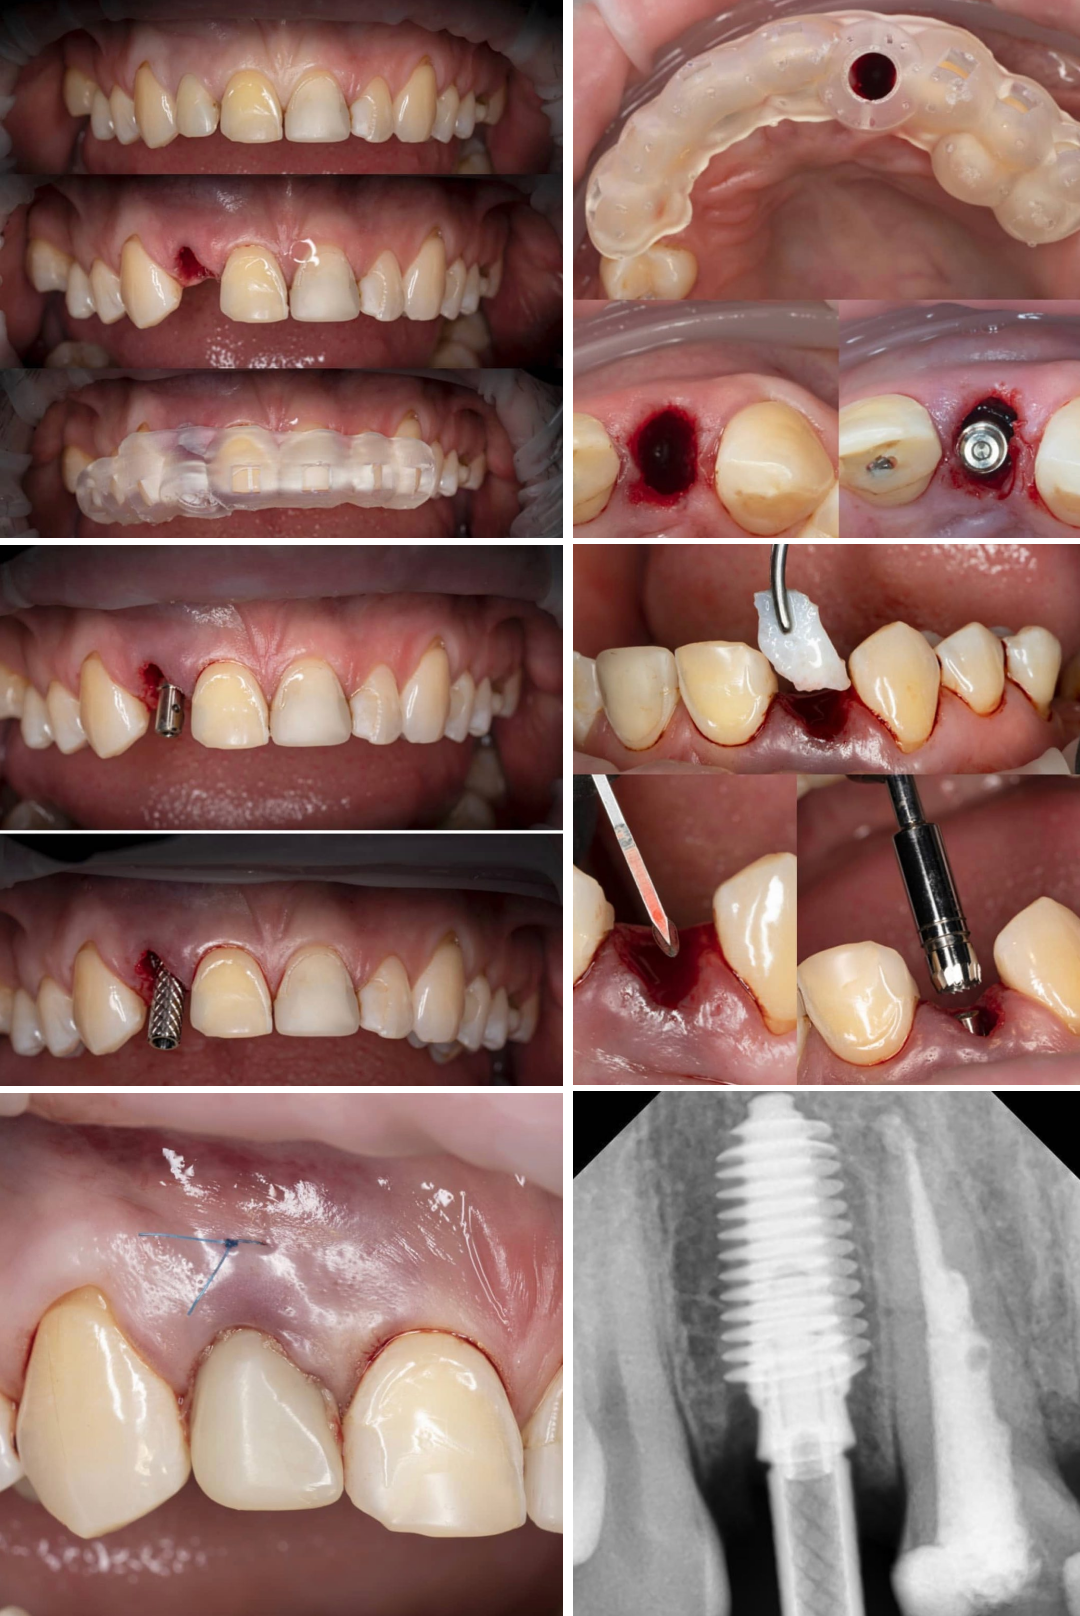 Кейс @smiledesign_spb. Удаление сломанного зуба, установка имплантата AnyRidge с помощью хирургического шаблона, десневая коррекция трансплантатом, фиксация временной коронки.